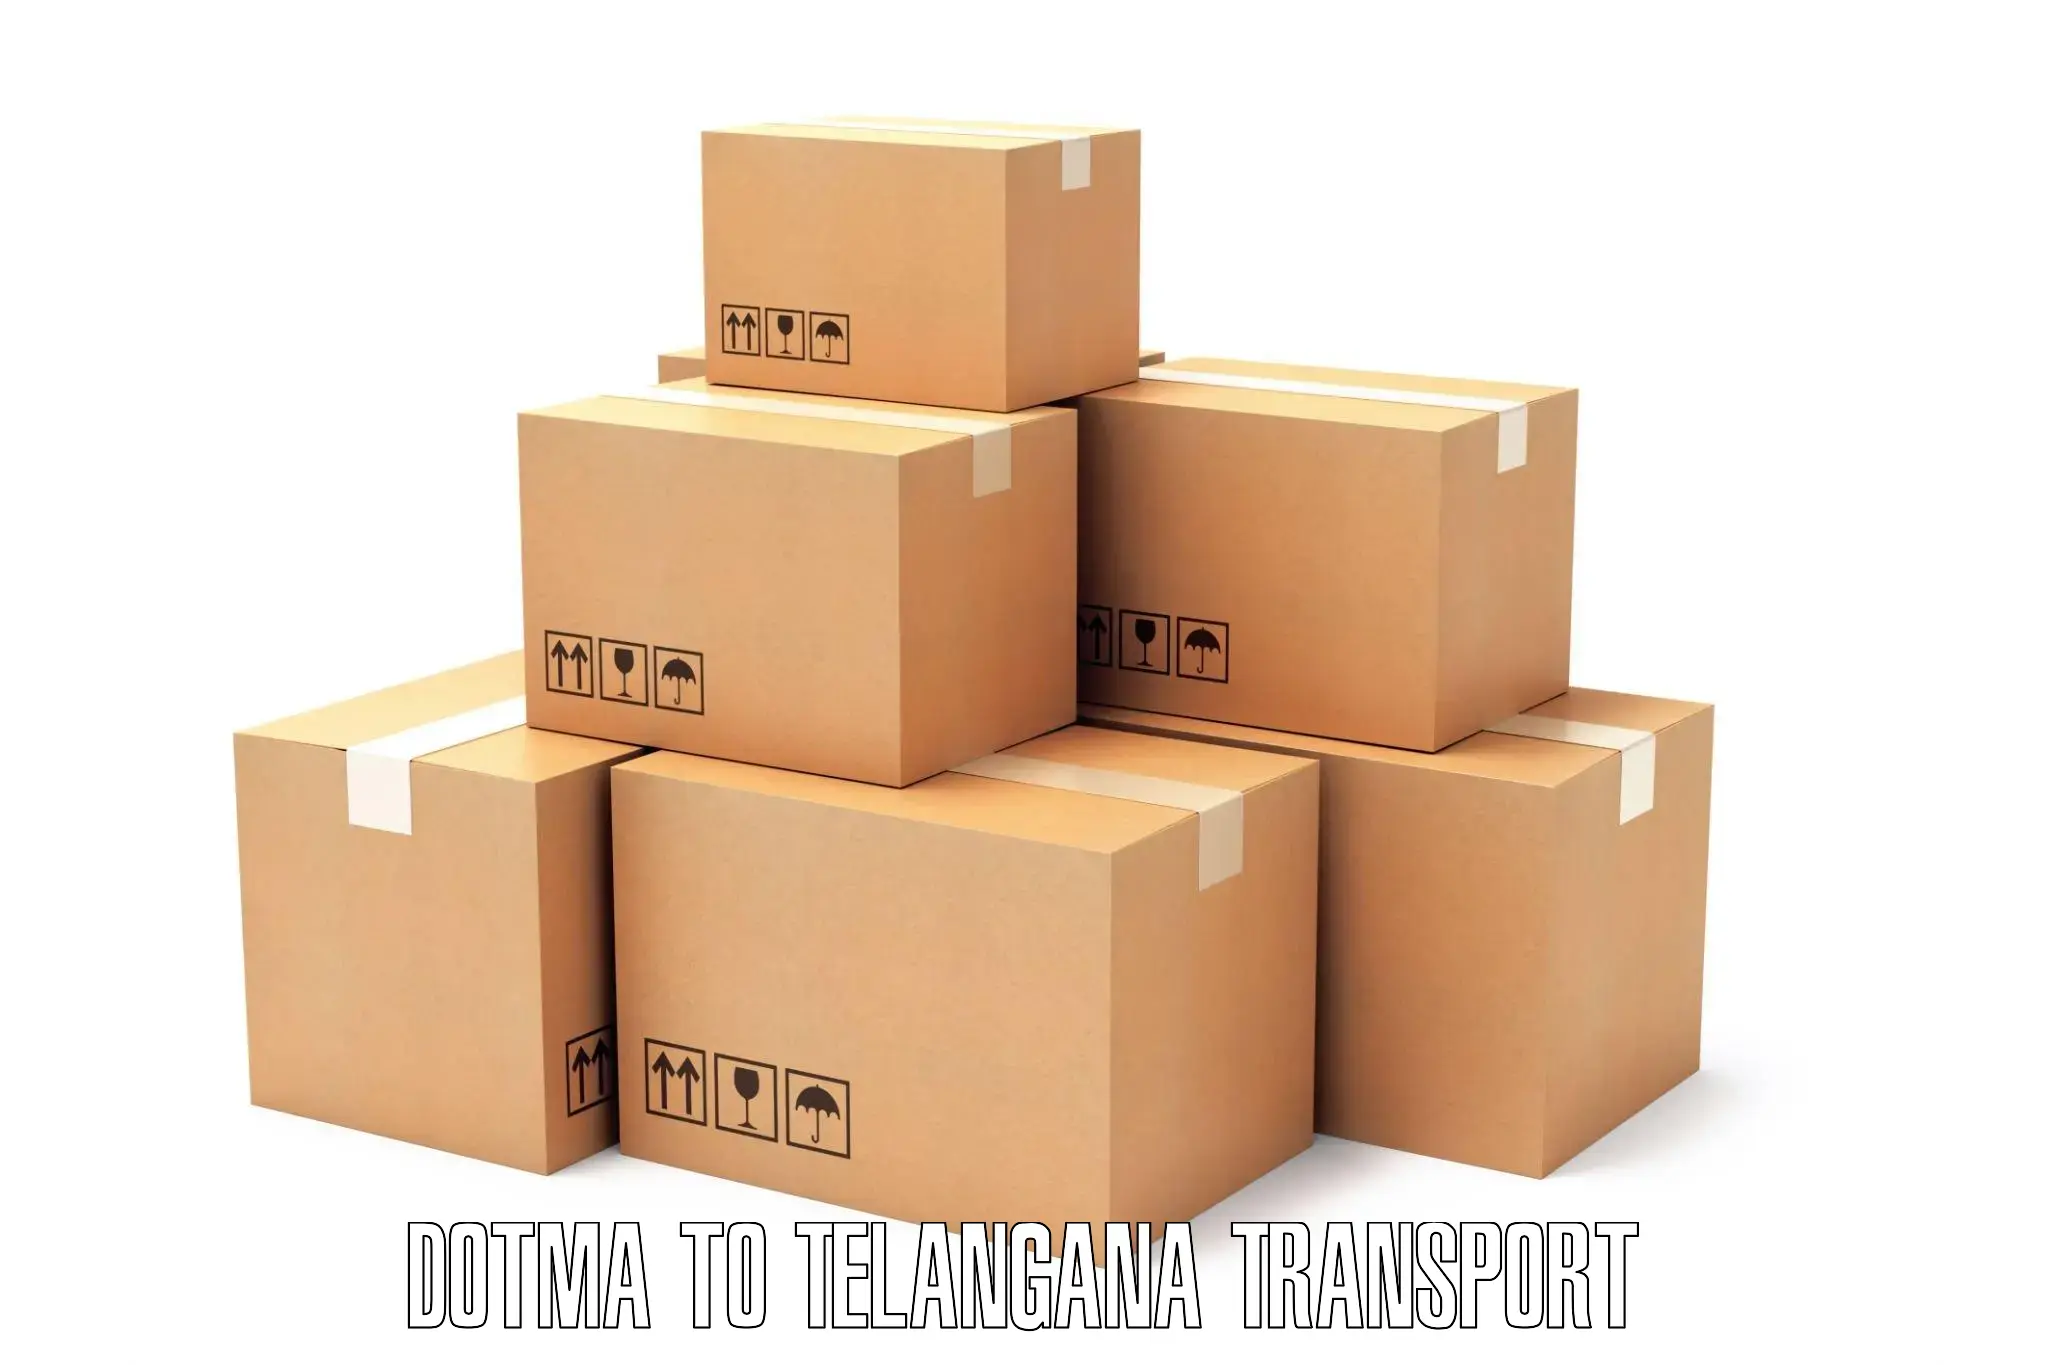 Daily parcel service transport Dotma to Kodad